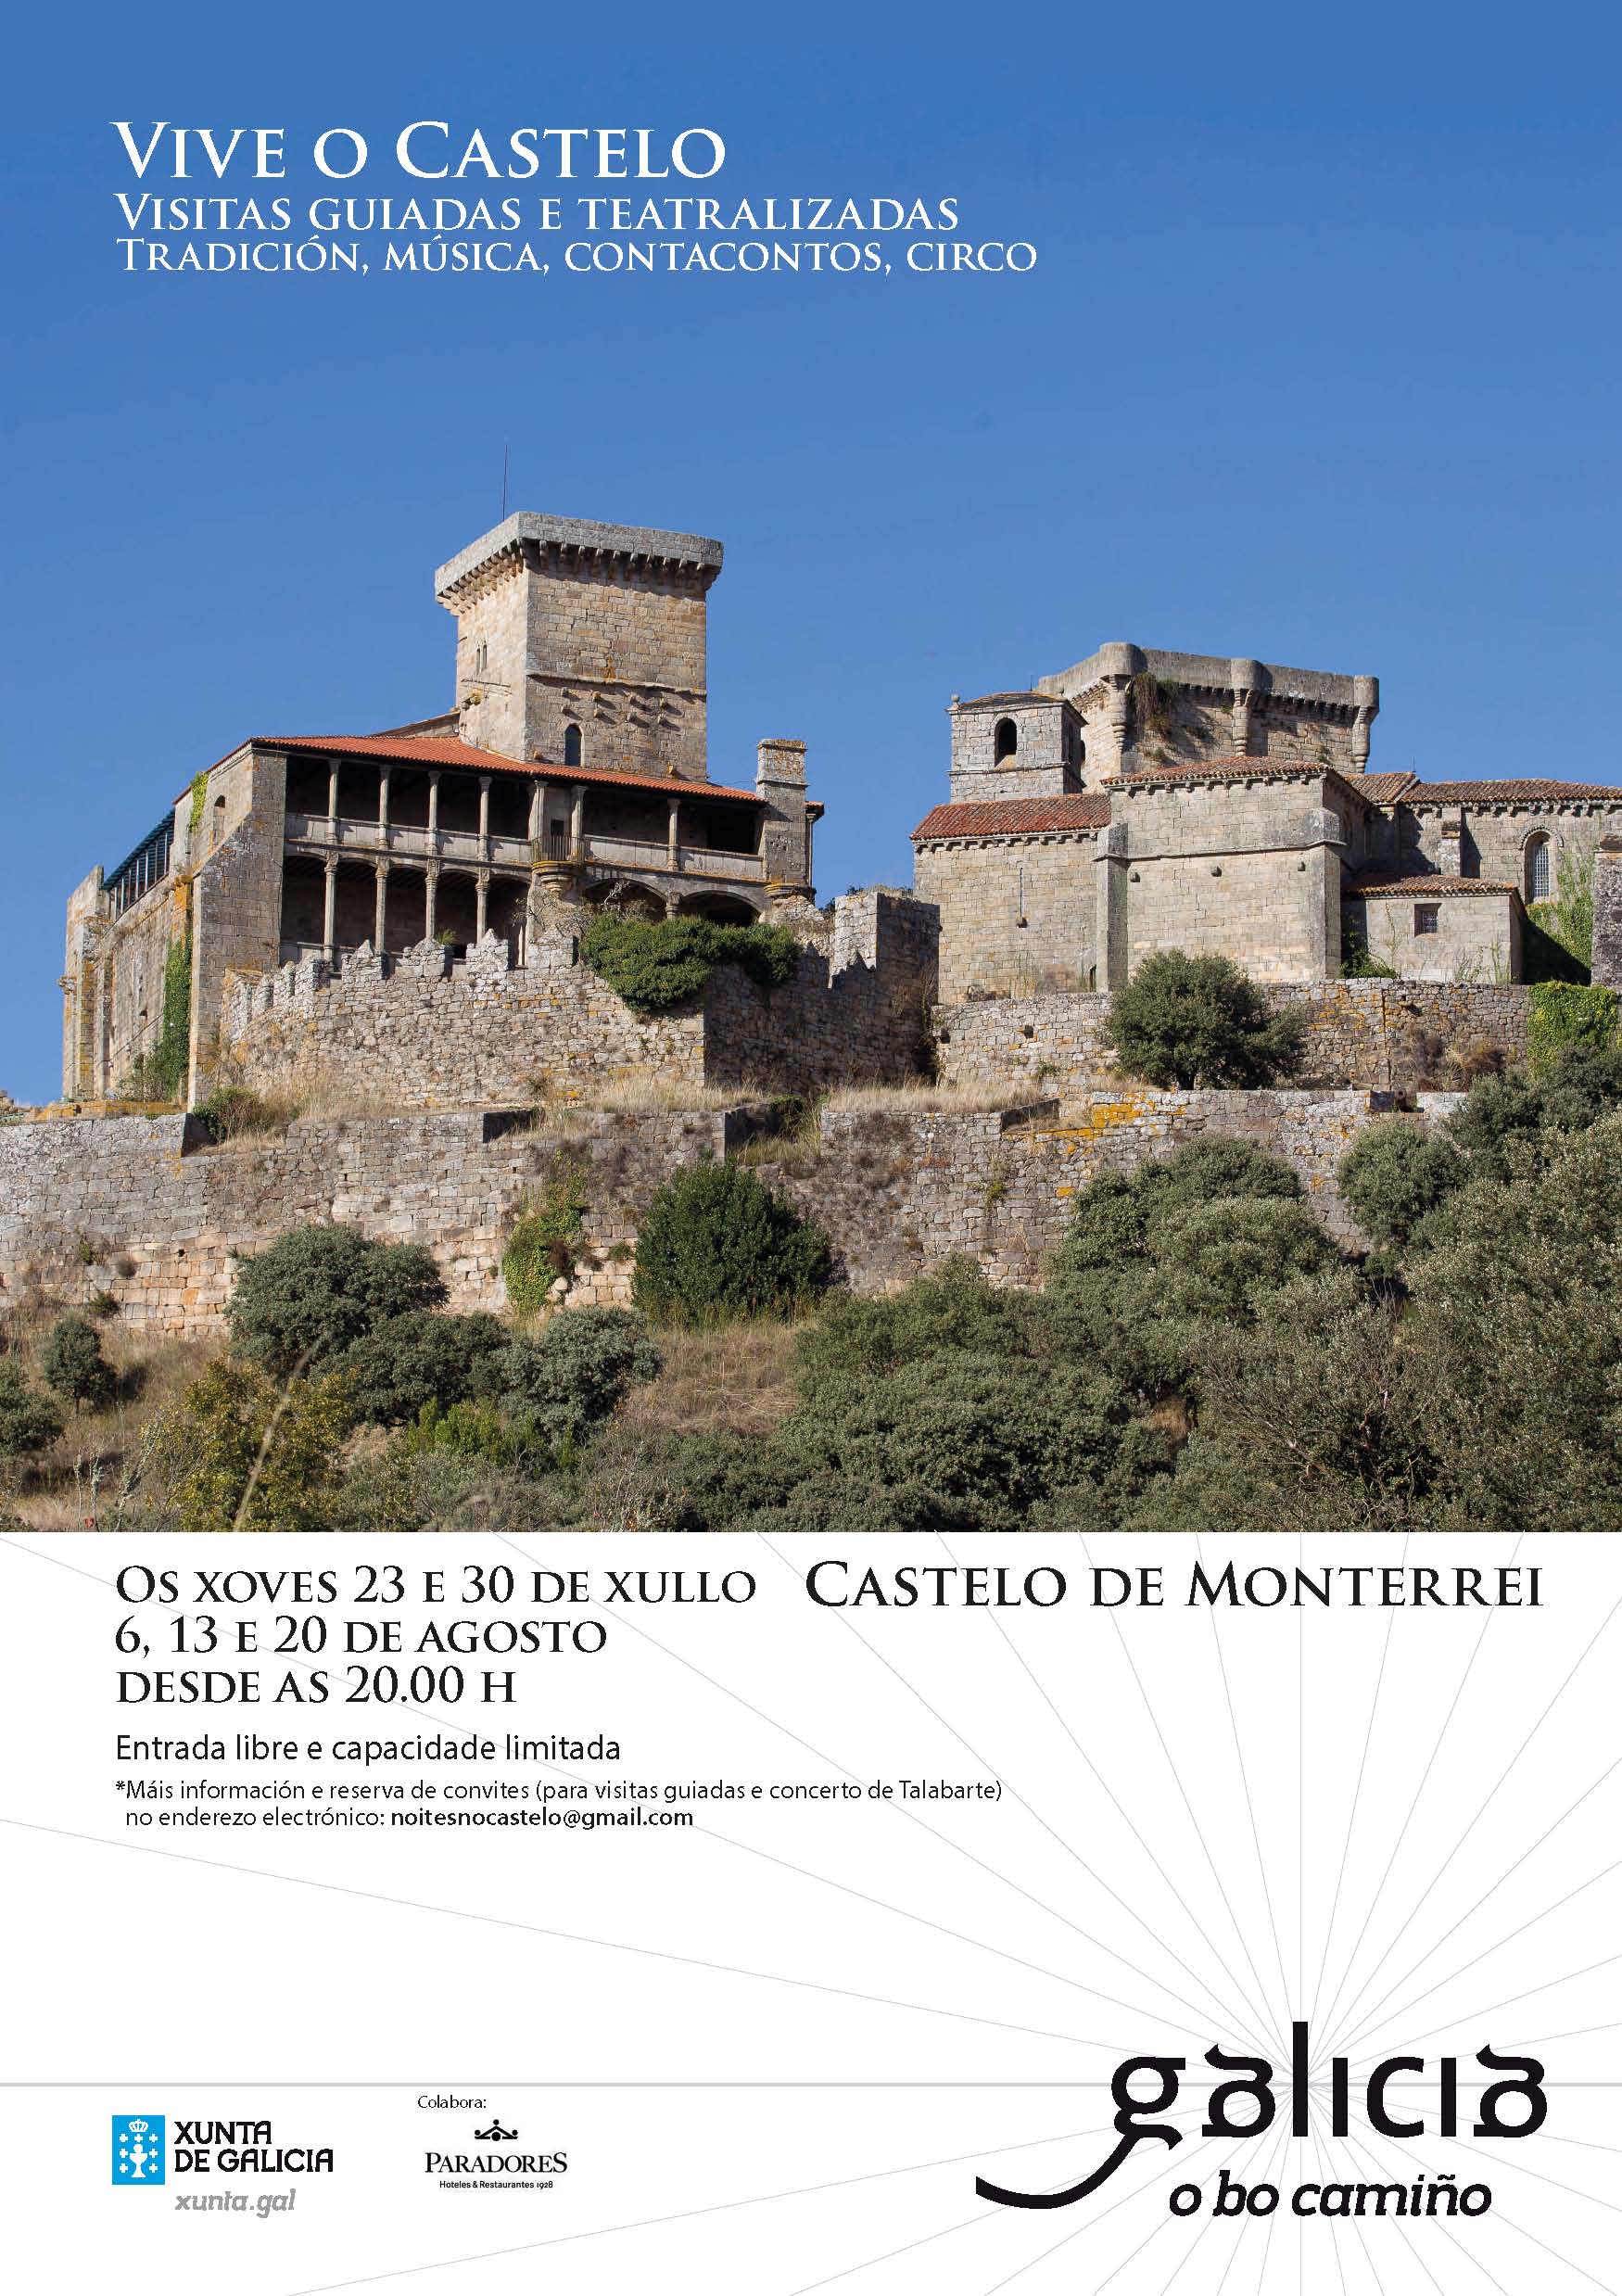 Visitas guiadas y teatralizadas para dinamizar turísticamente a o Castelo de Monterrei